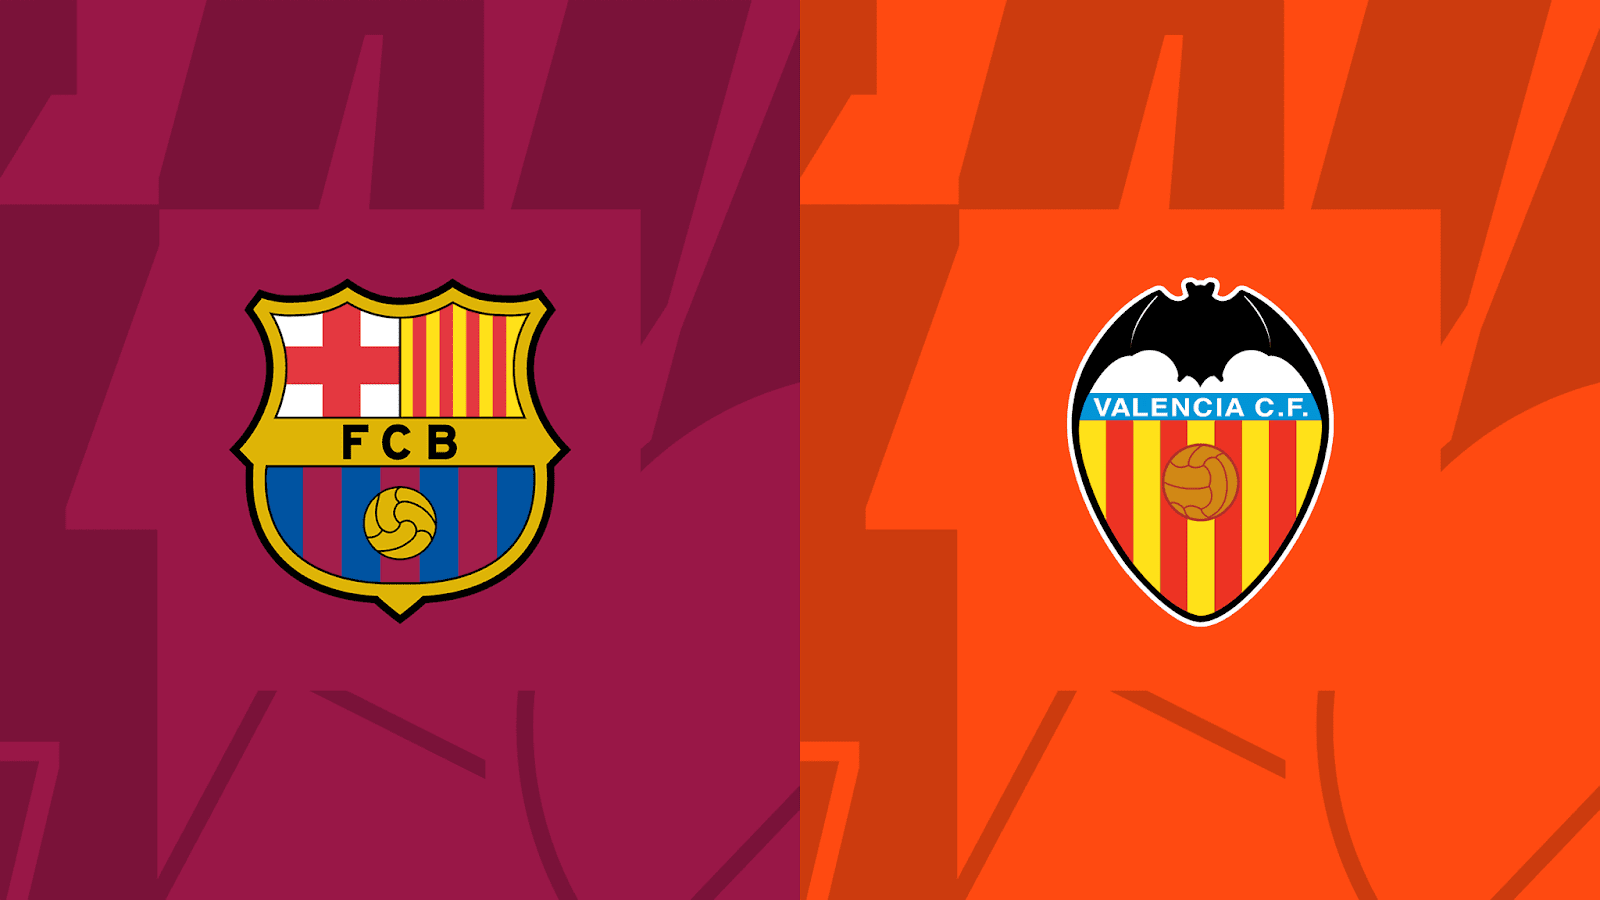 Giới thiệu khái quát về 2 đội Barcelona vs Valencia